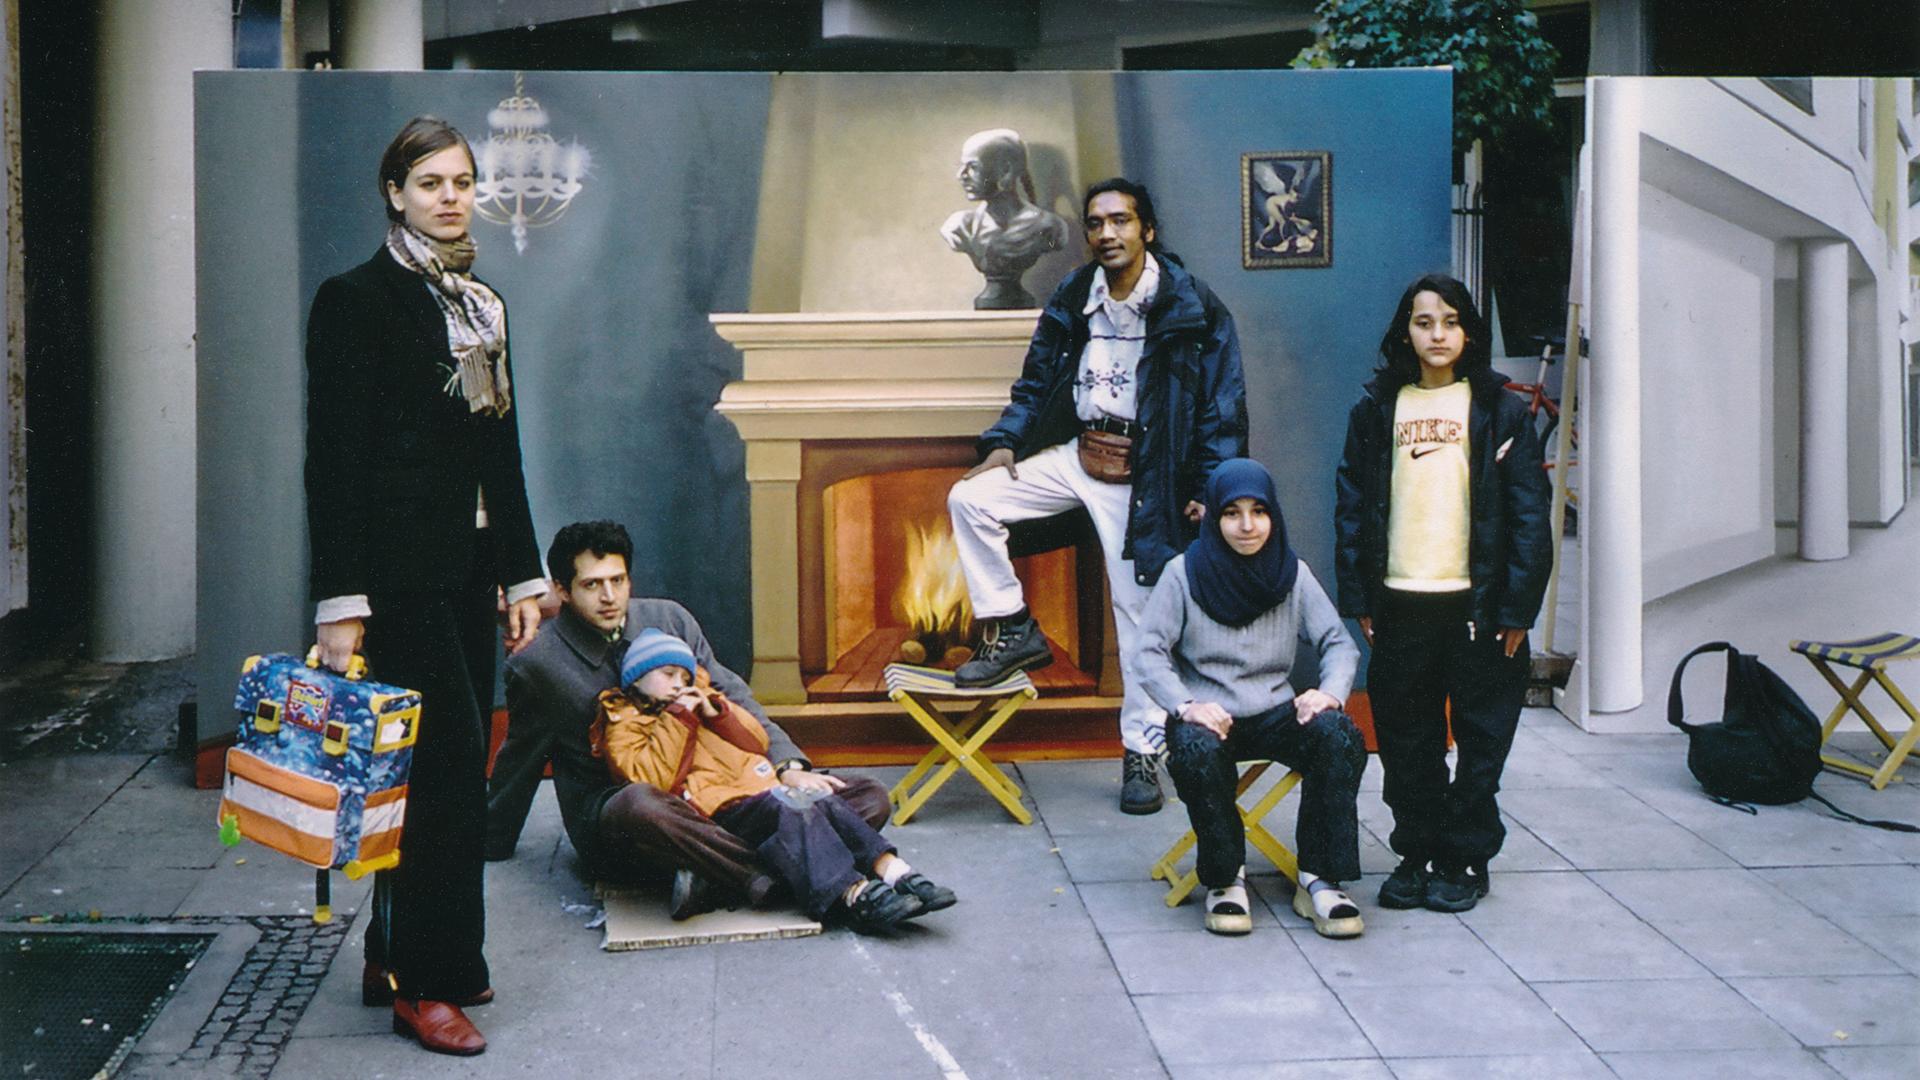 Ein Gruppe von Menschen posiert vor einem Gemälde. Das Bild zeigt ein Zimmer mit einem brennenden Kamin.